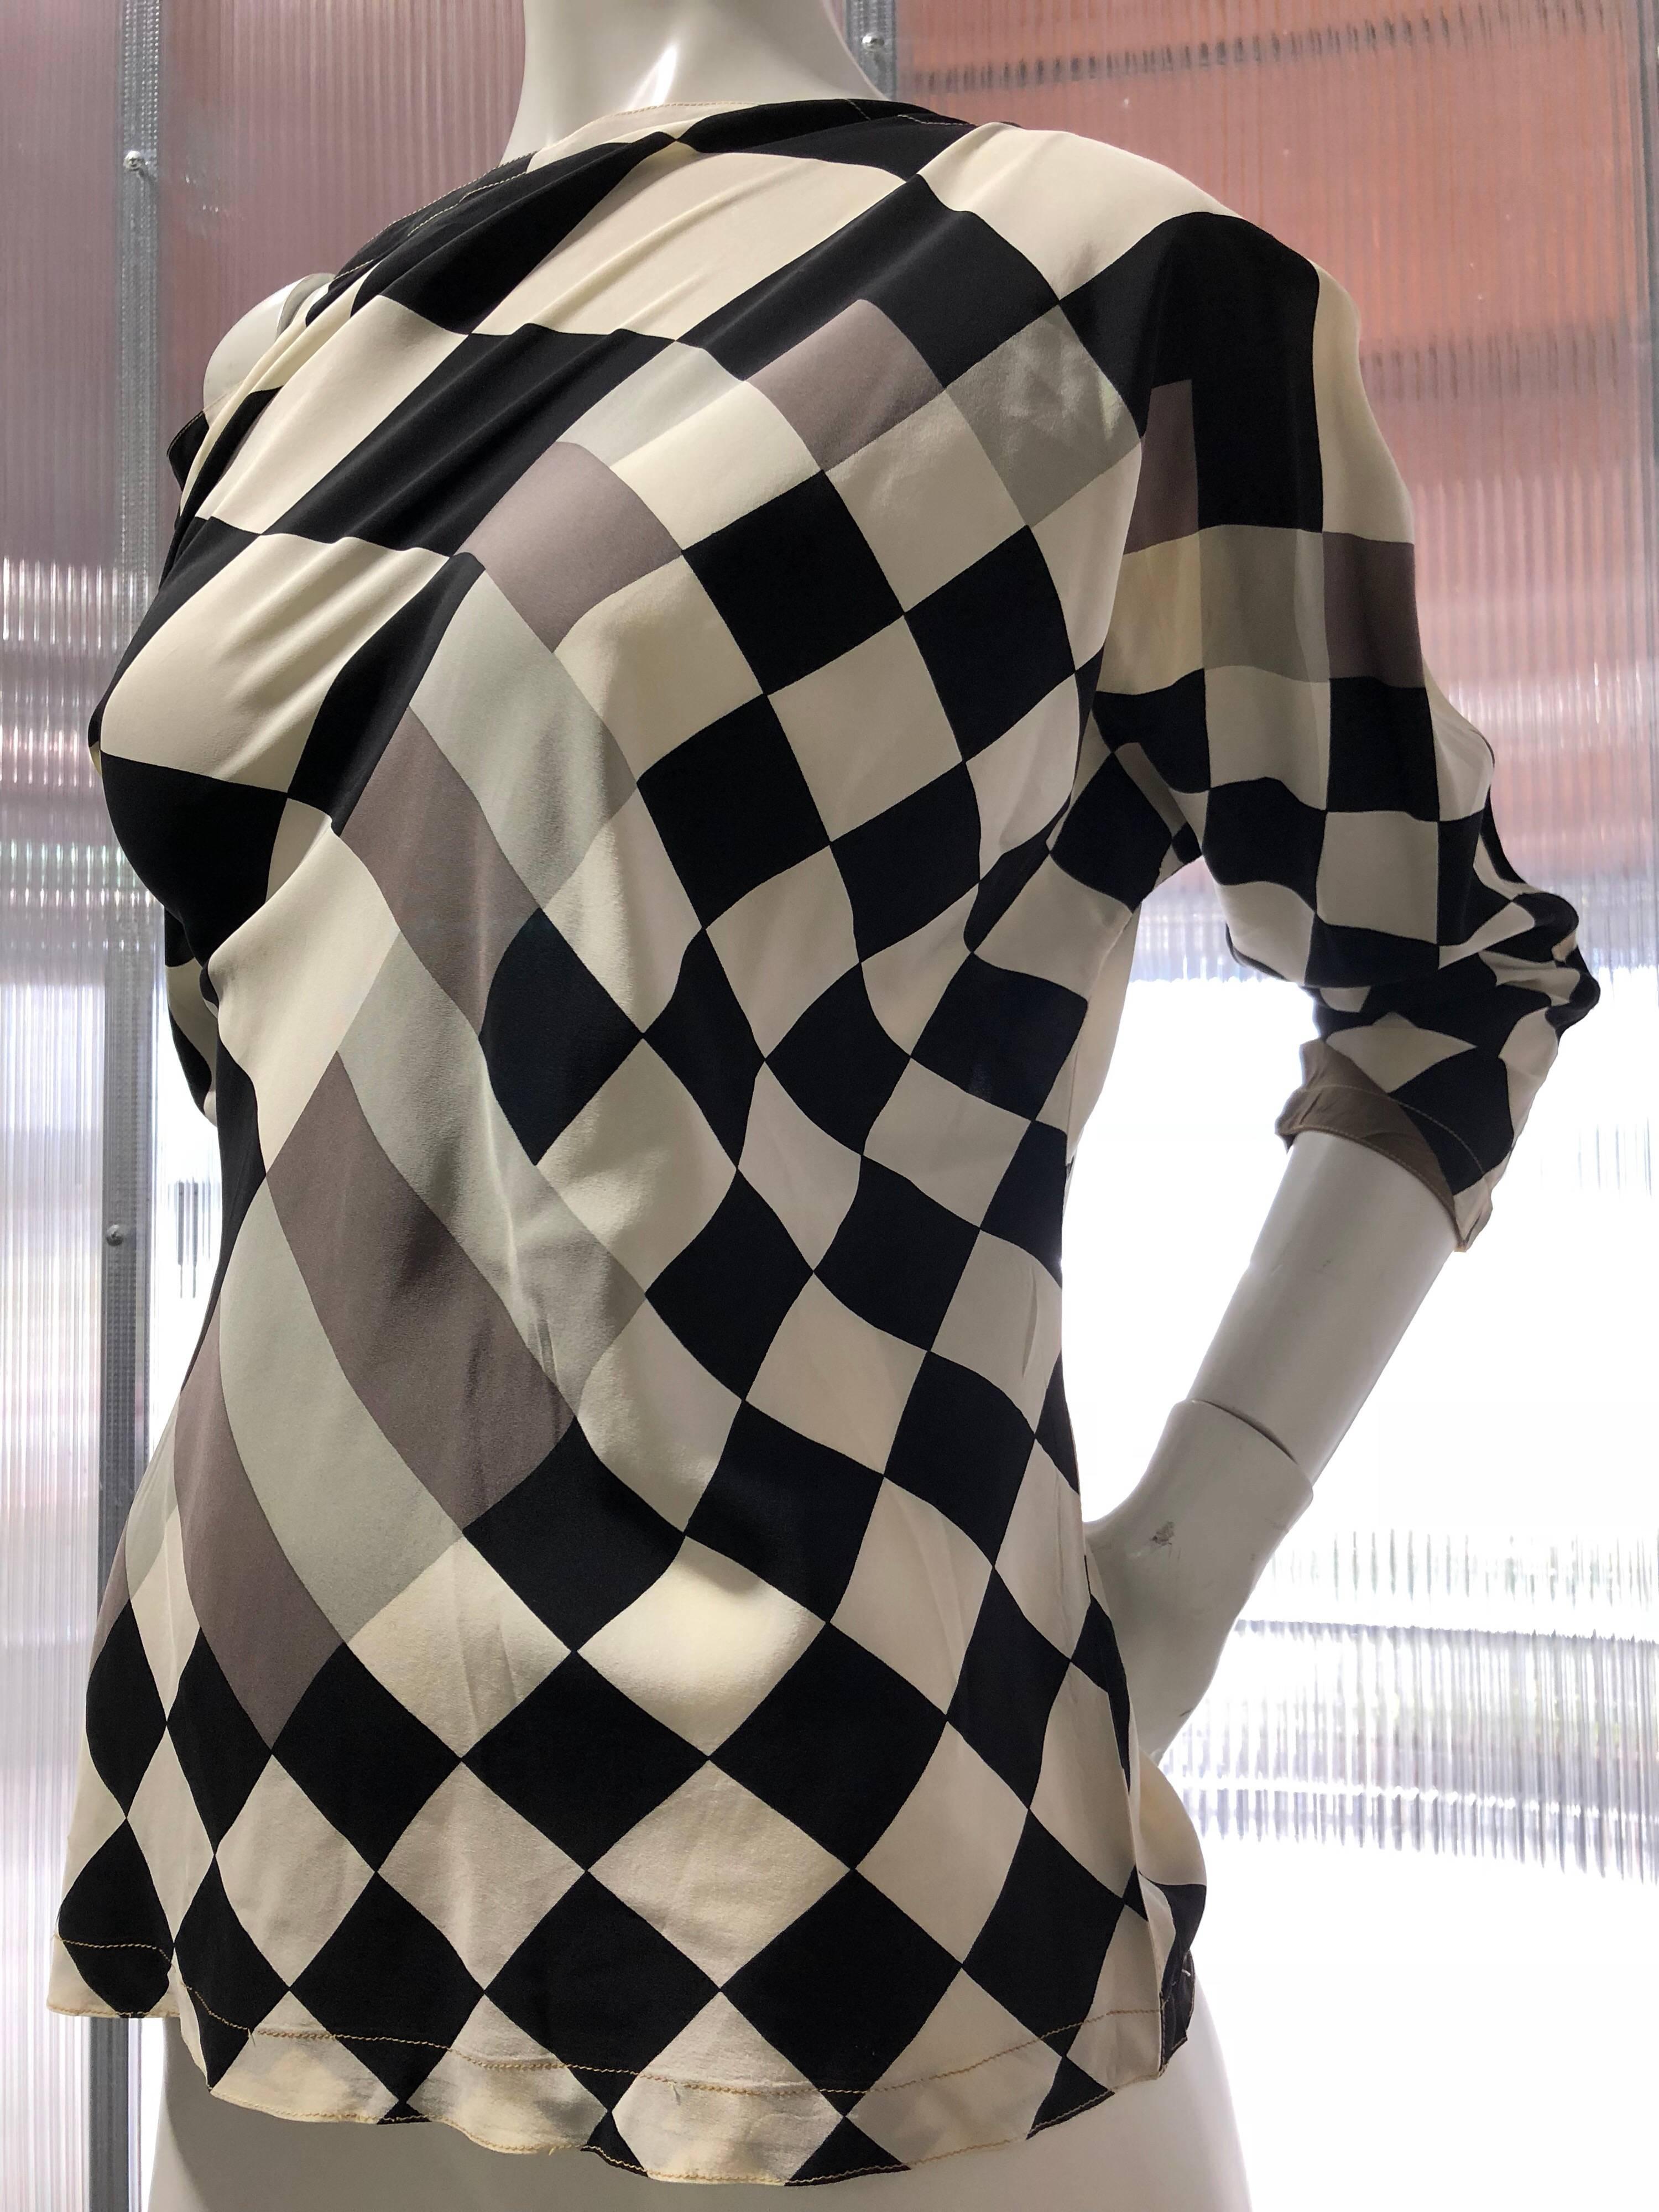 Schwarz-weiß karierte, langärmelige Seidenbluse von Gianni Versace aus den 1980er Jahren mit Pixeldruckmuster.  Schlüpft über den Kopf mit konisch zulaufenden Dolman-Ärmeln. Super-sexy 1980er Jahre! Größe 42